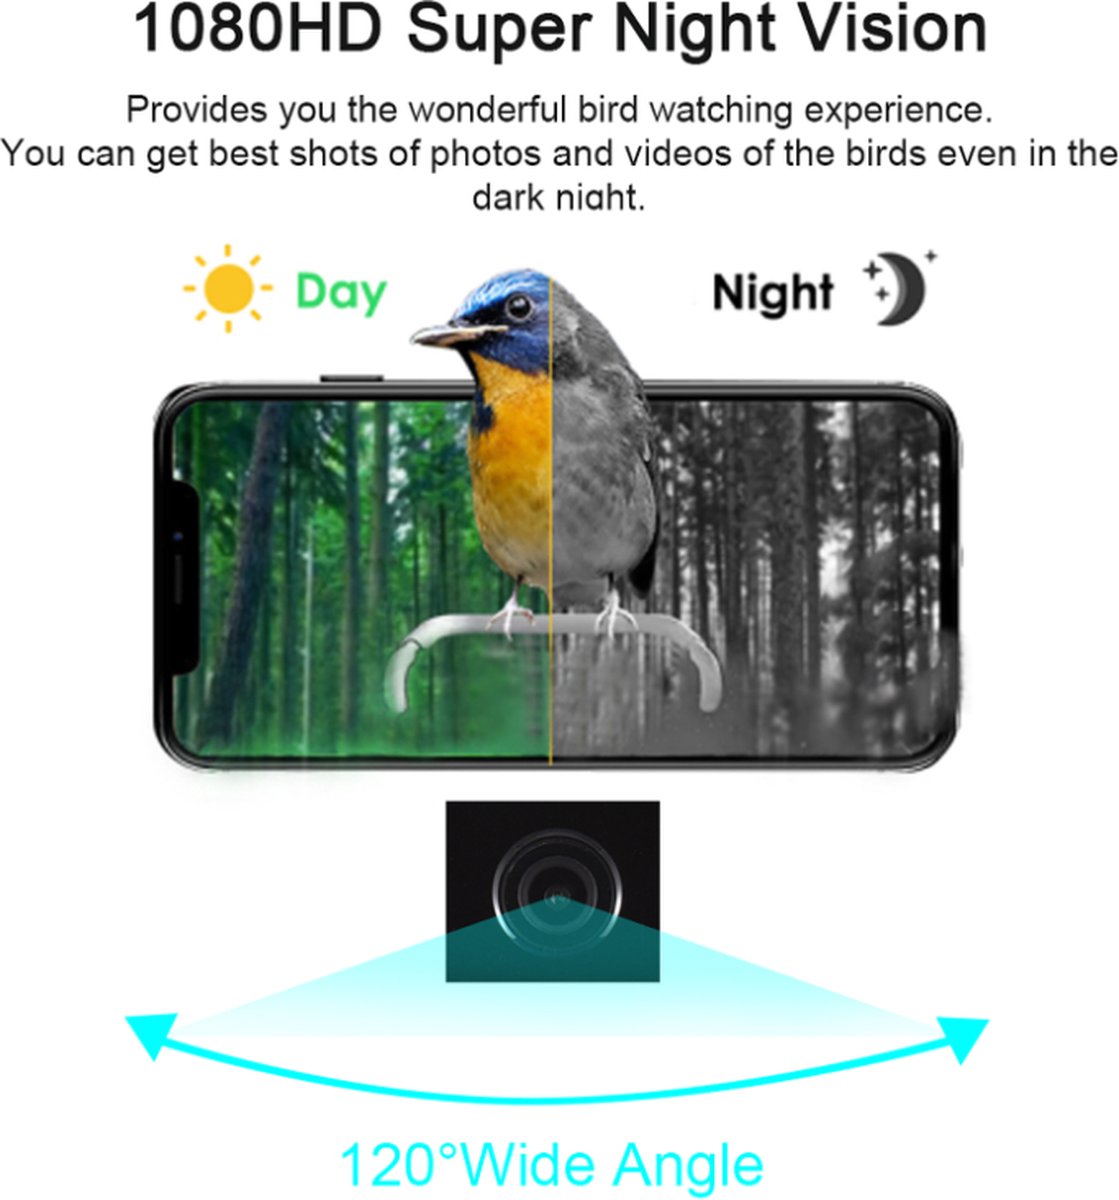 Mangeoire d'oiseaux intelligente avec caméra, Hd 1080p Night